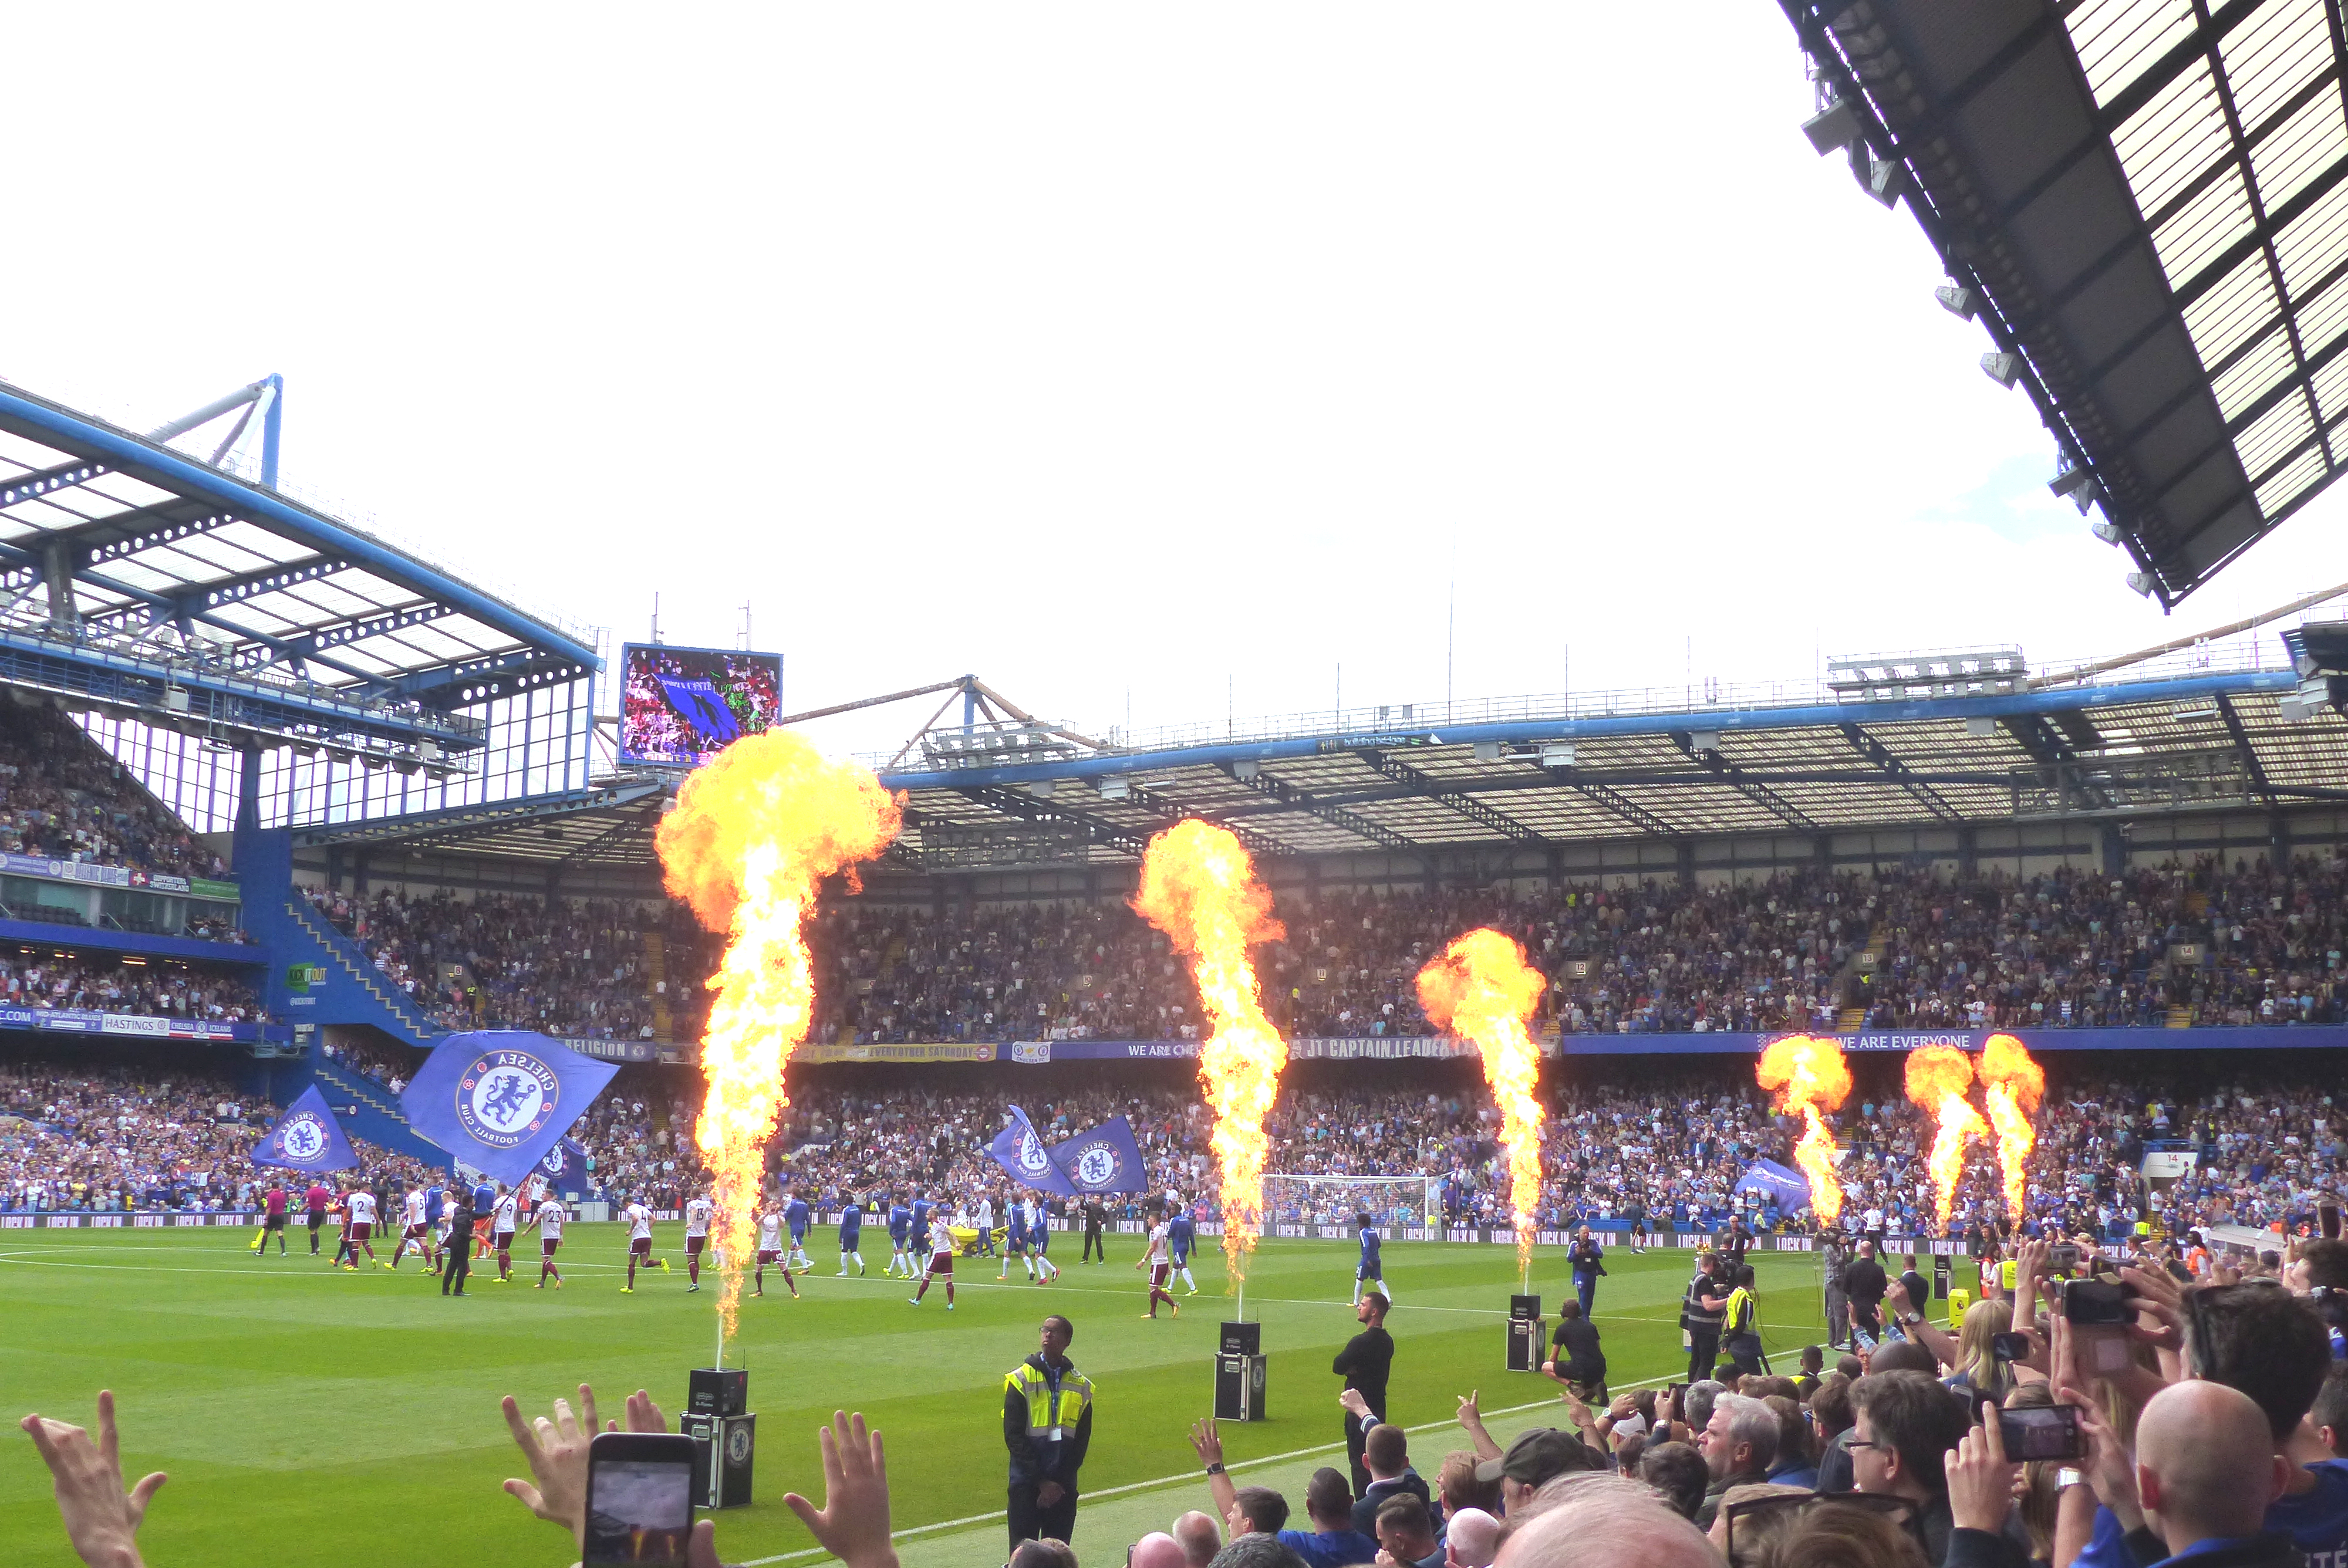 Stamford Bridge (stadium) - Wikipedia